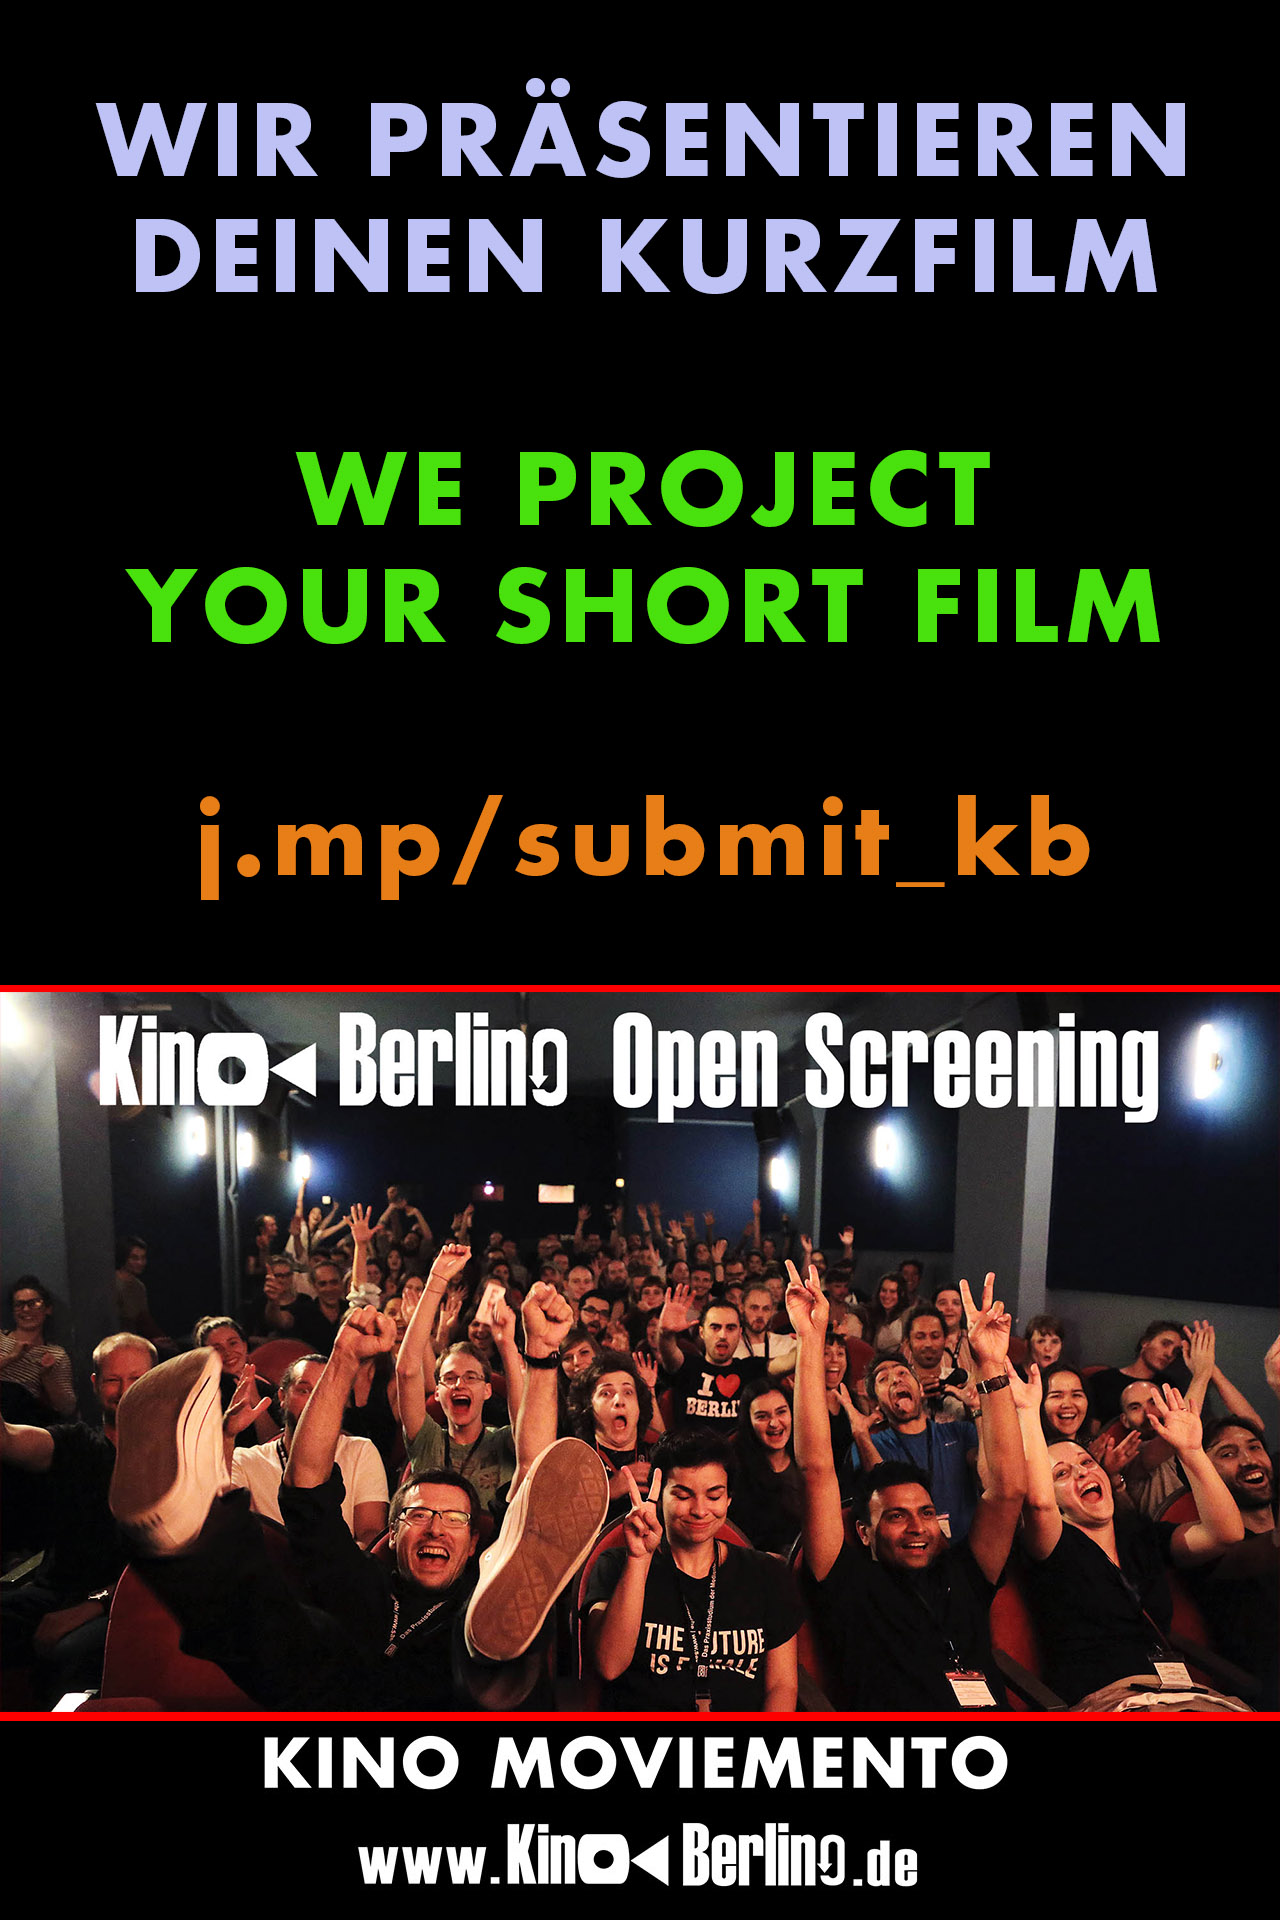 KinoBerlino - Open Screening